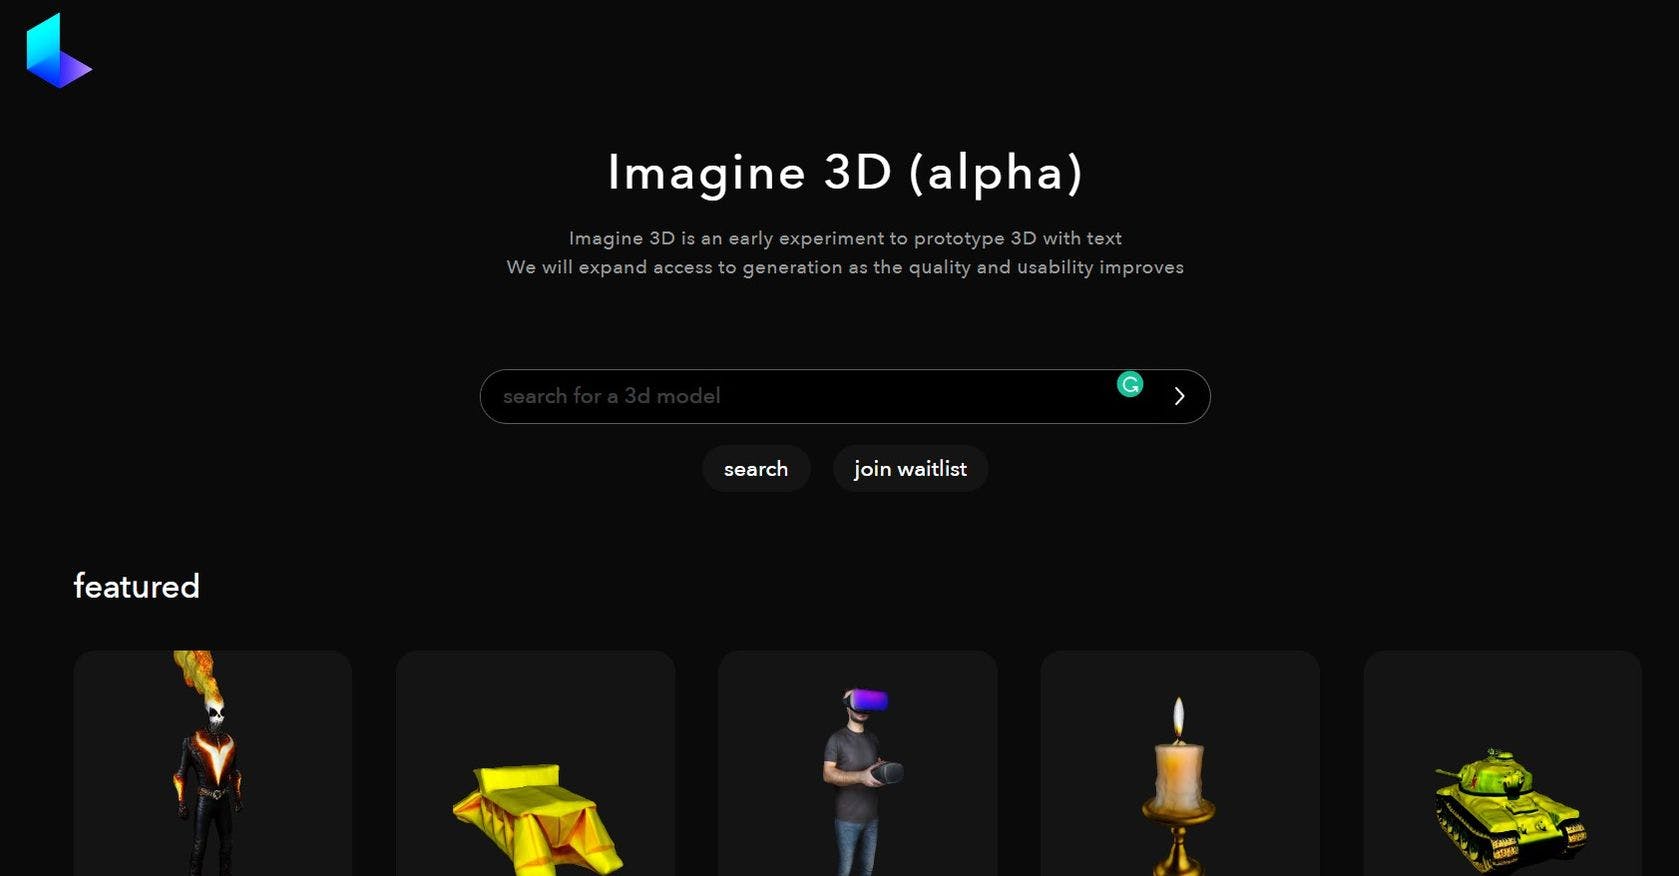 ThemotherAI - Imagine 3D